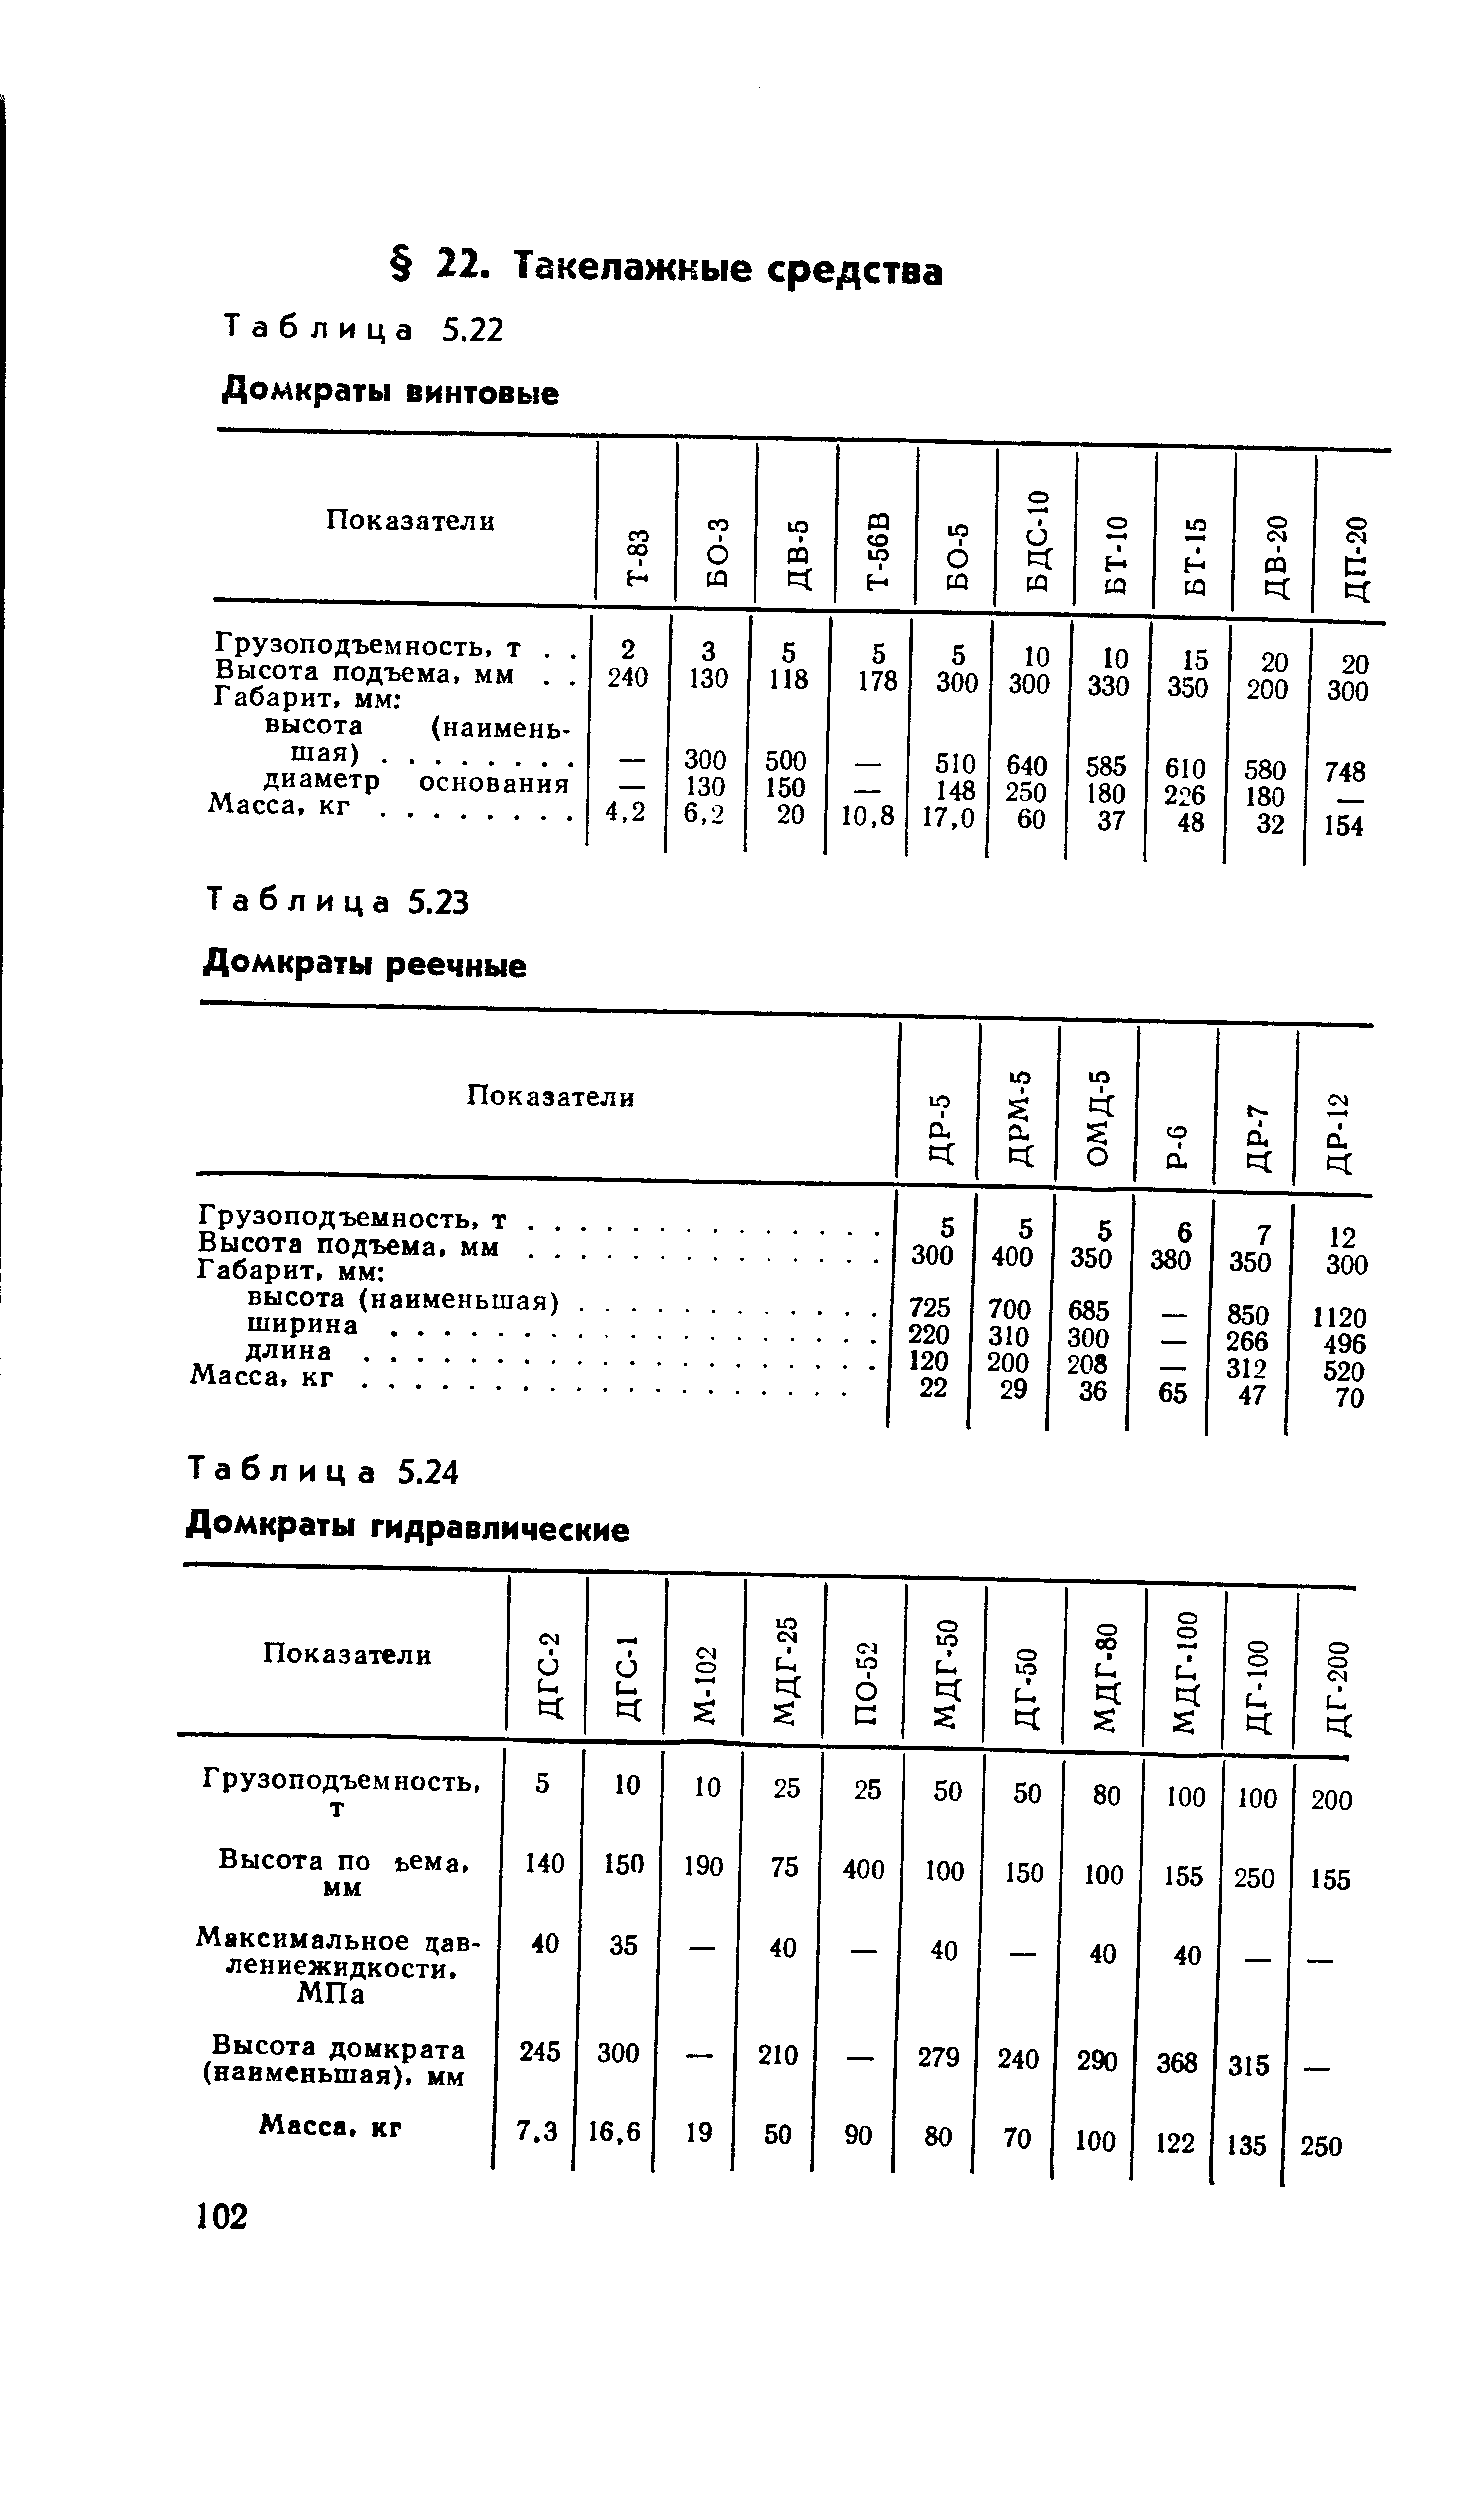 Таблица 5.24 Домкраты гидравлические
